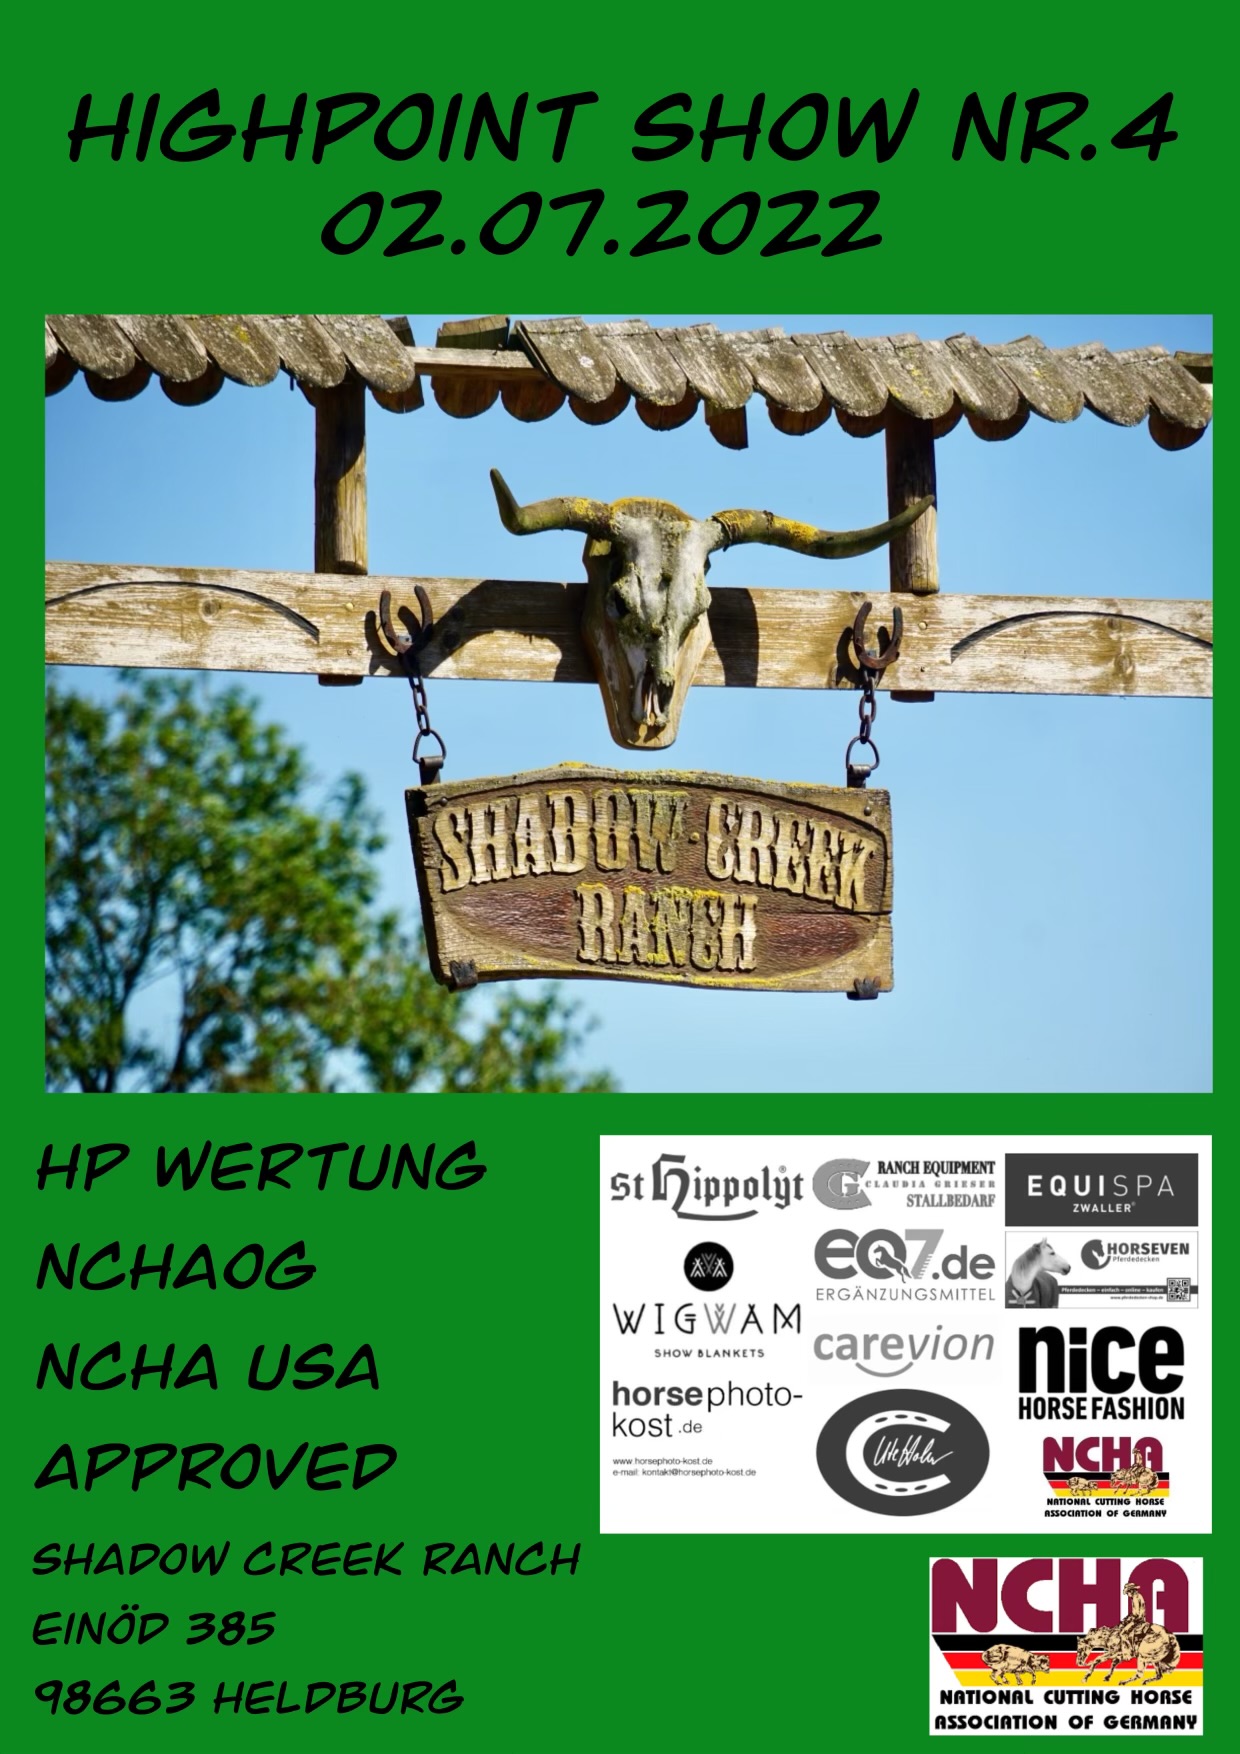 High Point Show N°4 auf der Shadow Creek Ranch in Einöd am 02. Juli